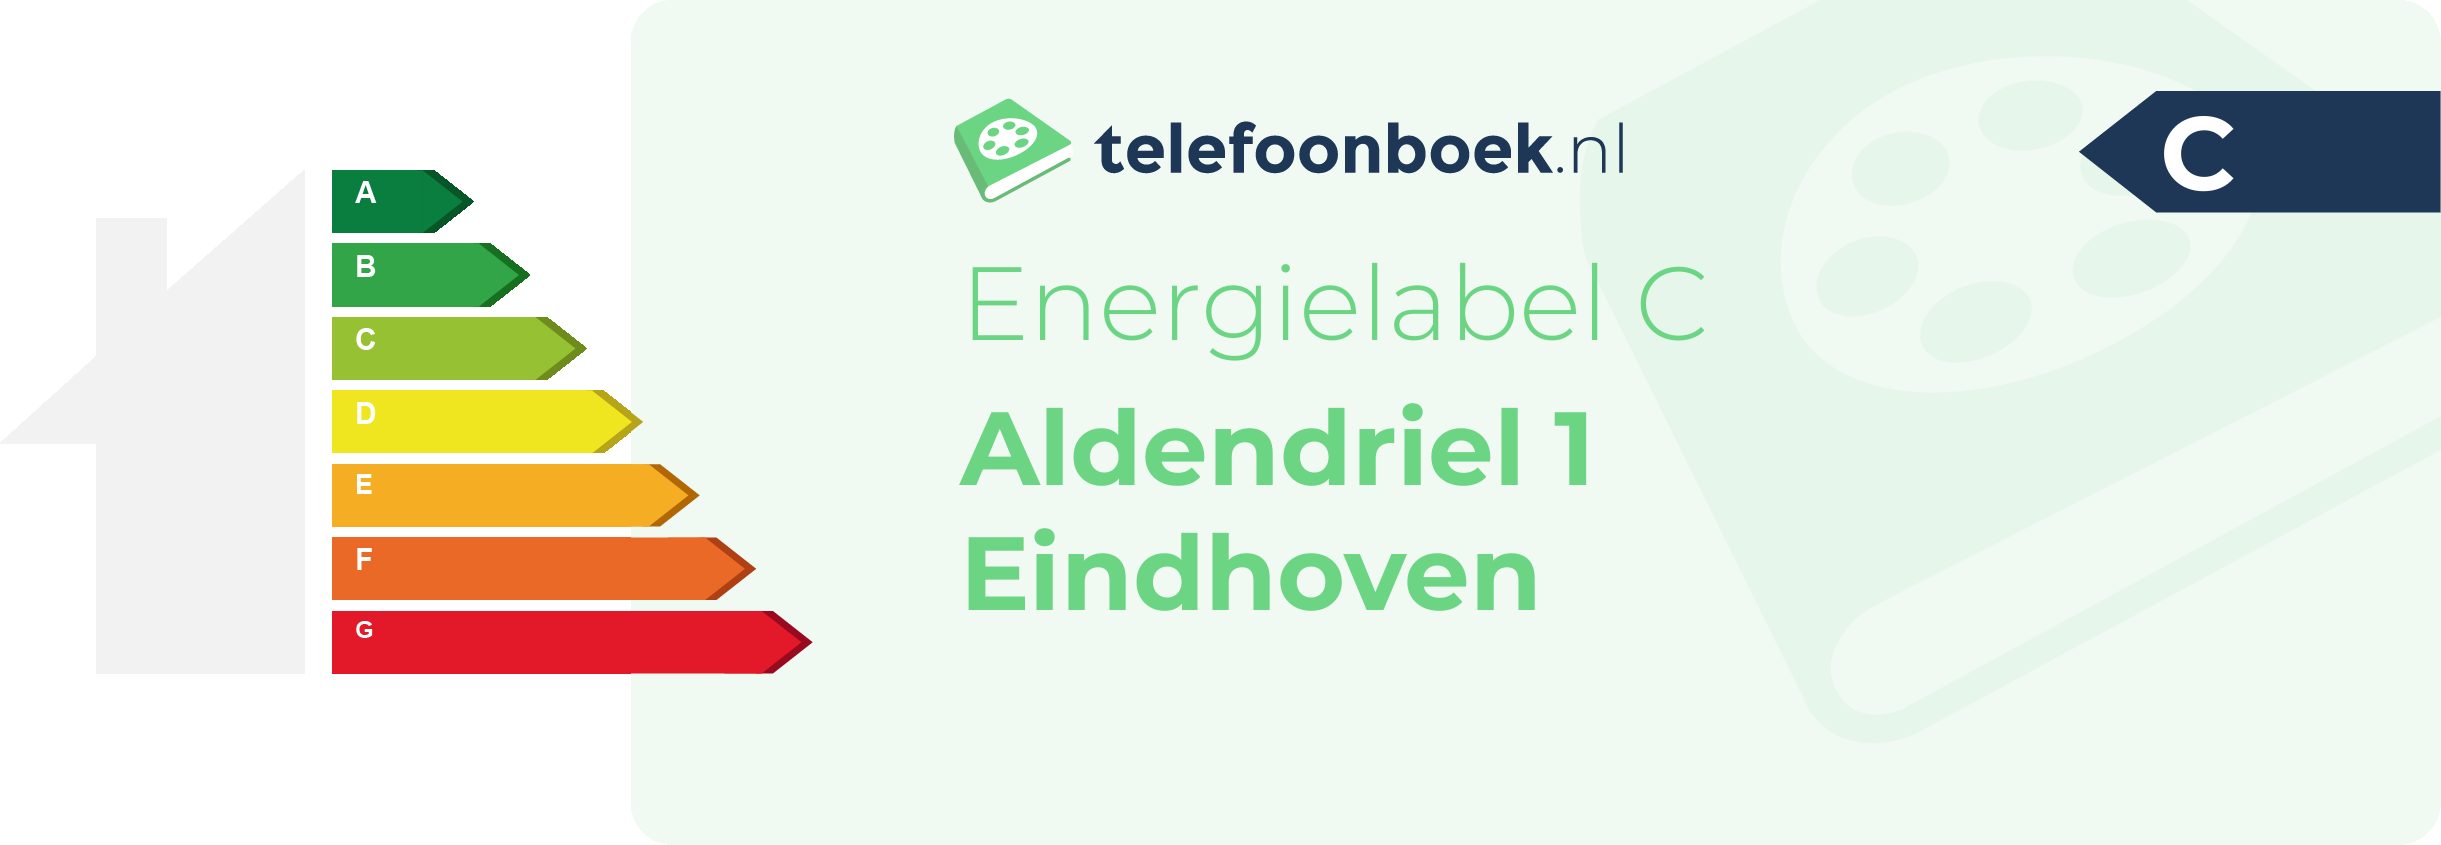 Energielabel Aldendriel 1 Eindhoven